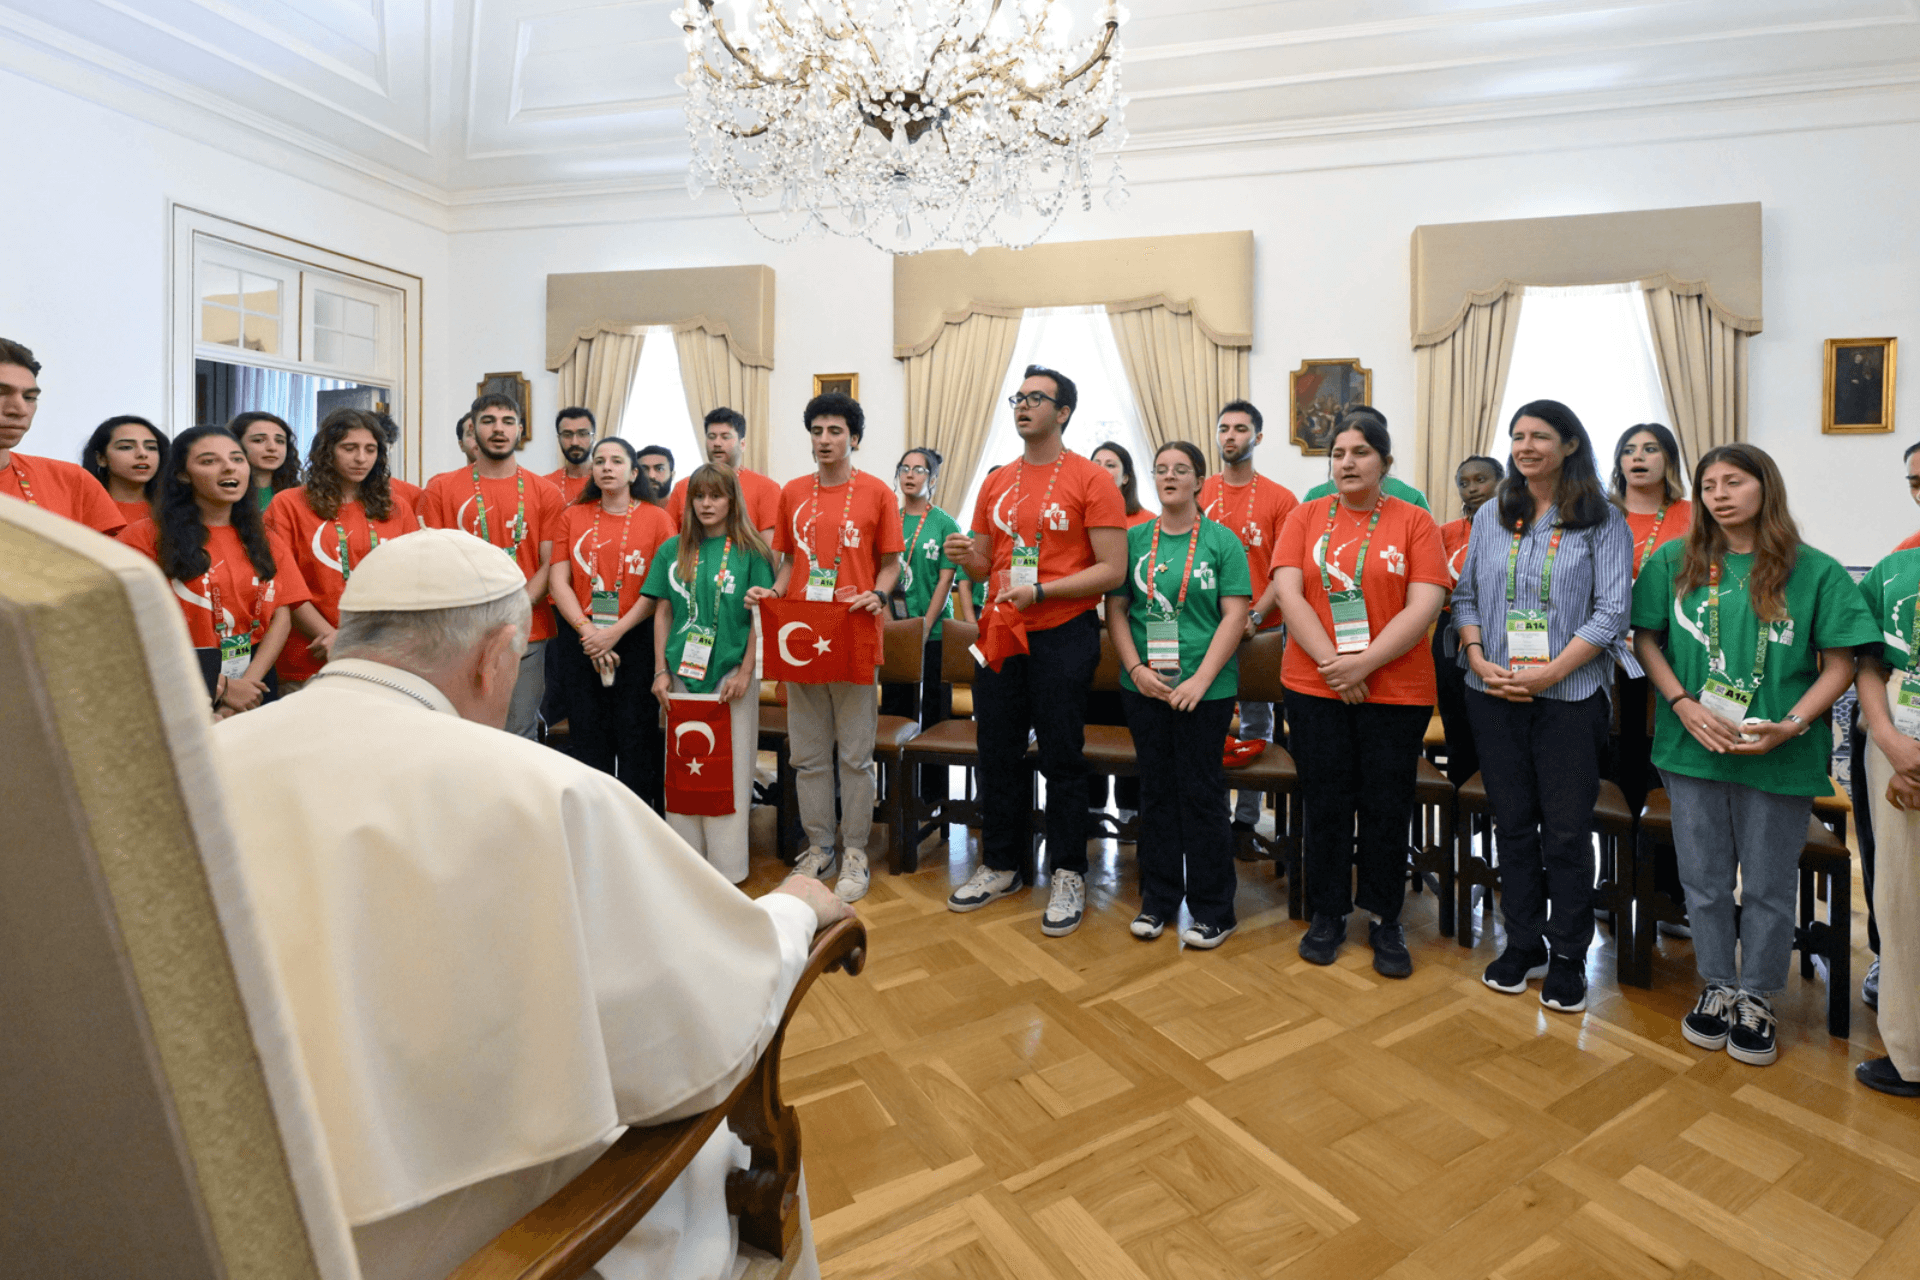 Imagen destacada del artículo: El Papa Francisco se reúne con jóvenes turcos